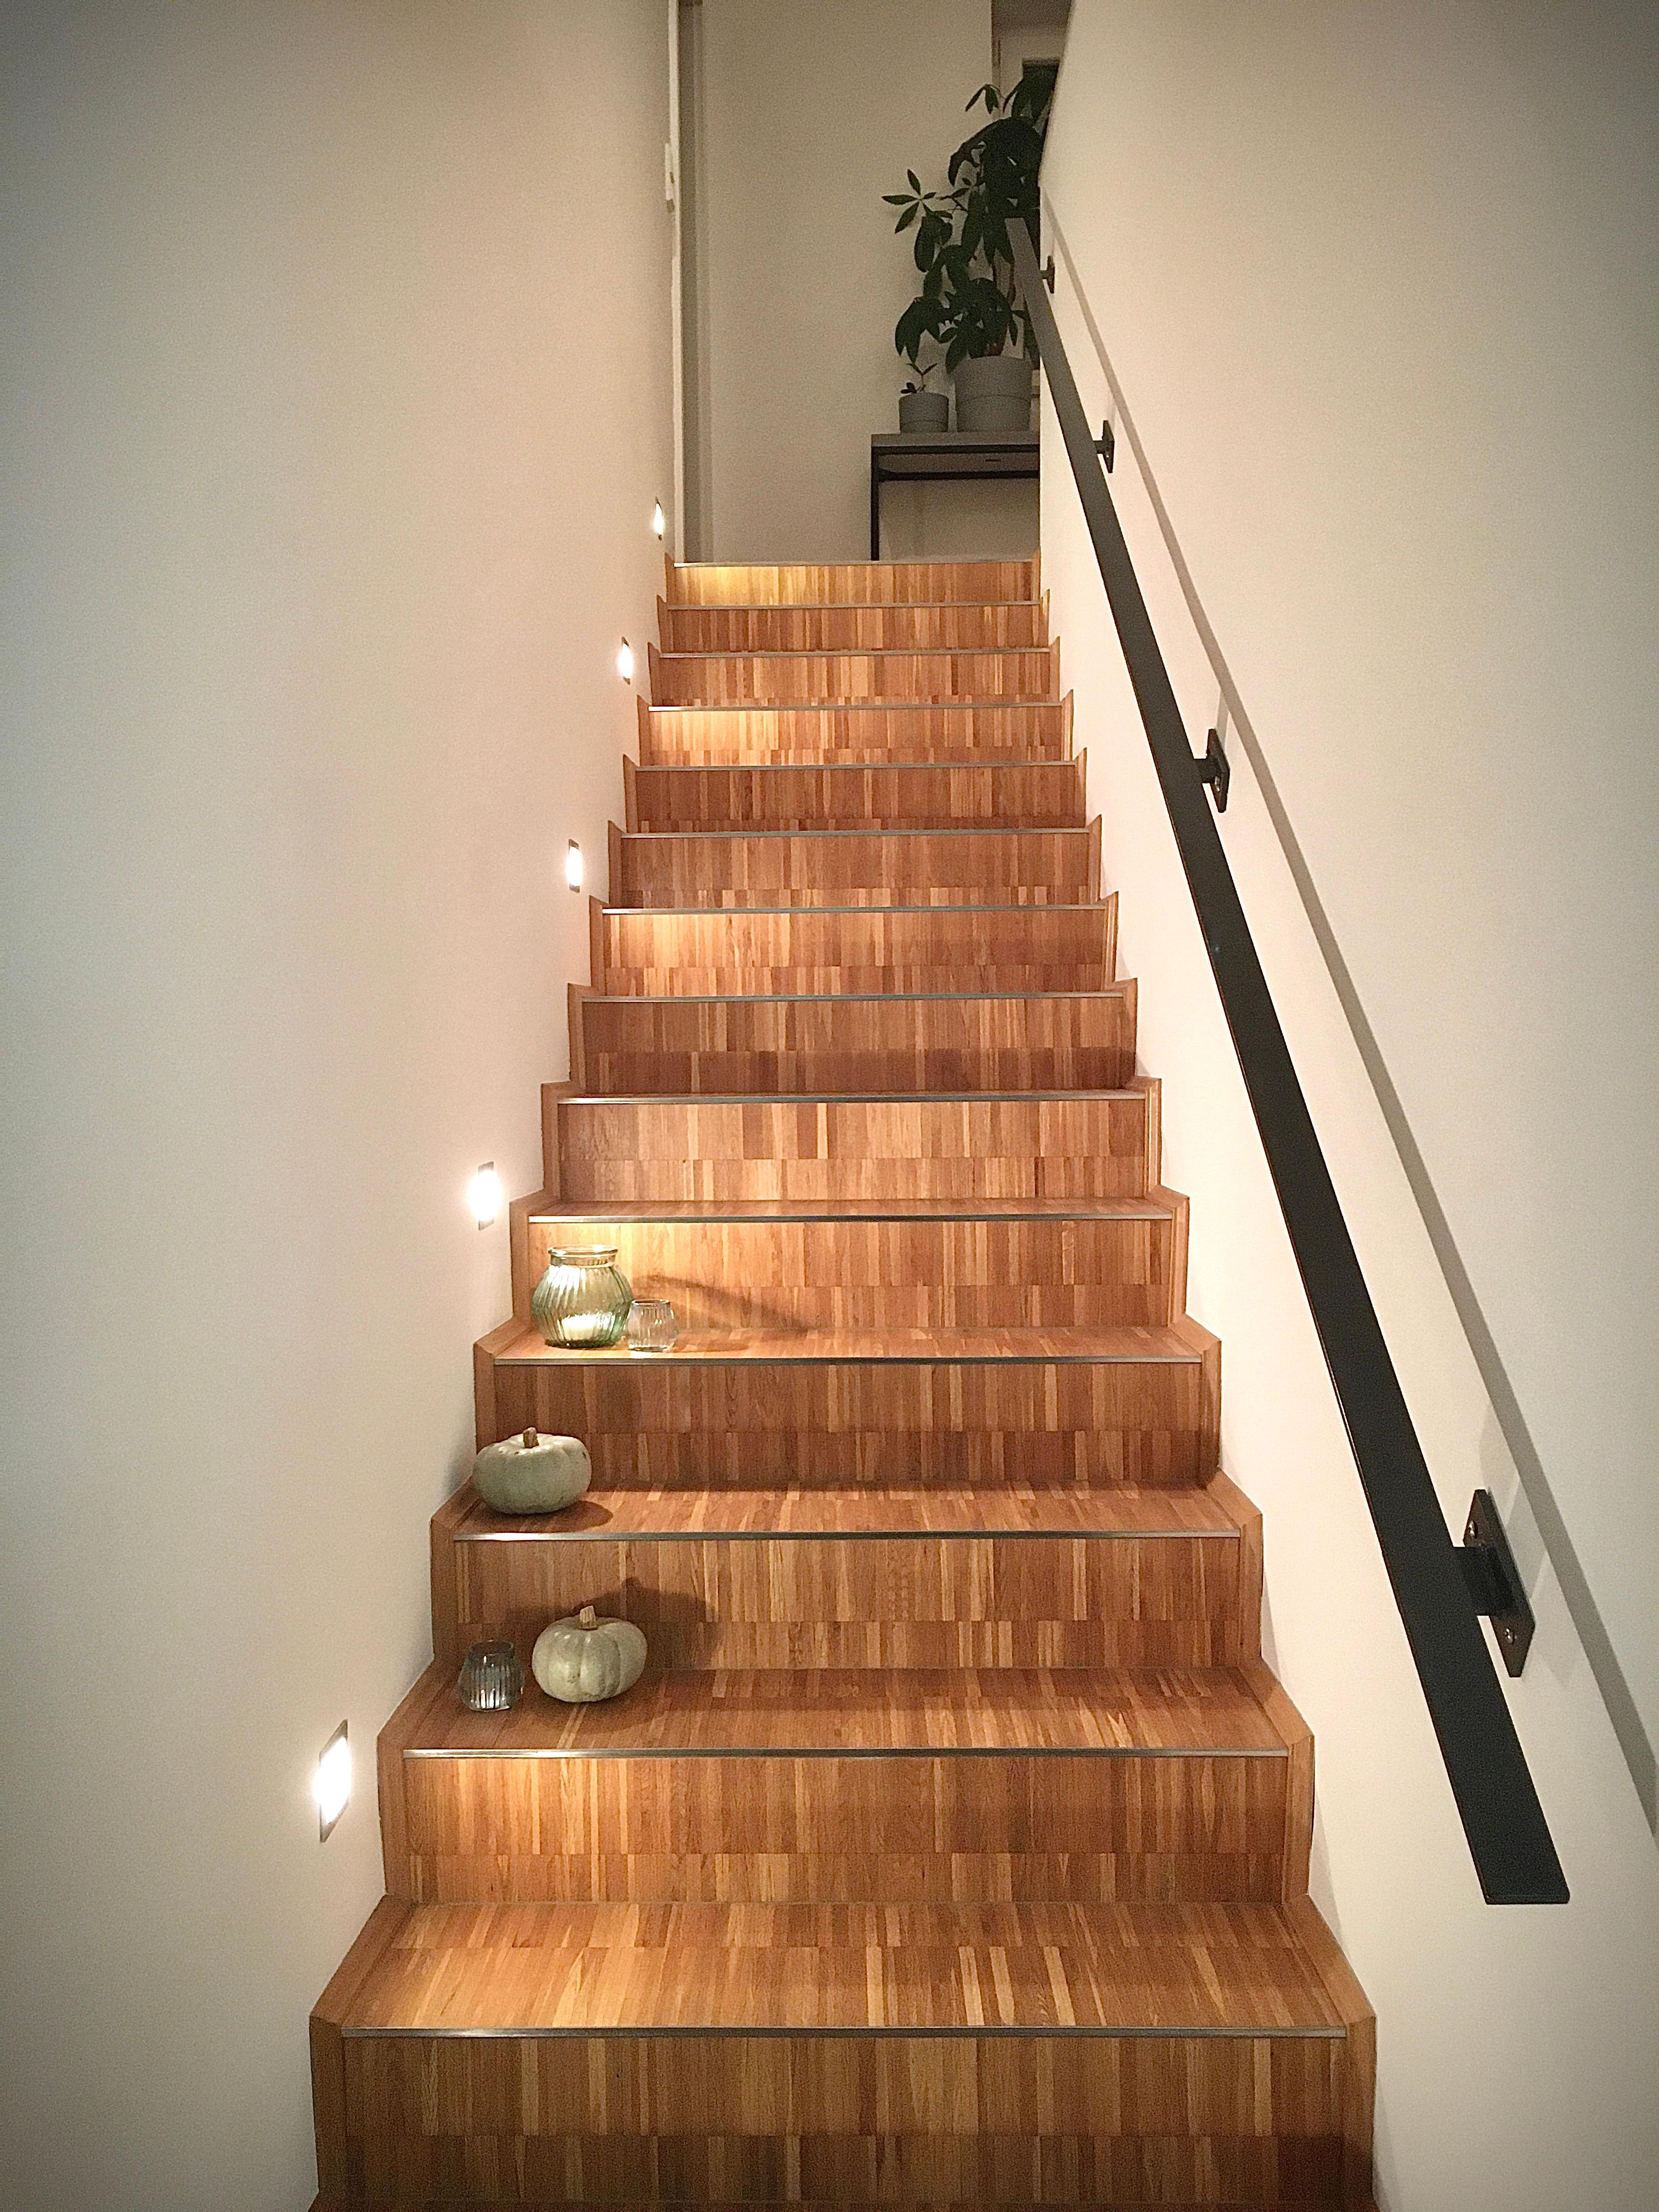 Hoch hinauf
#treppe#designparkett#geländer
#design#grau#stufefürstufe#interior